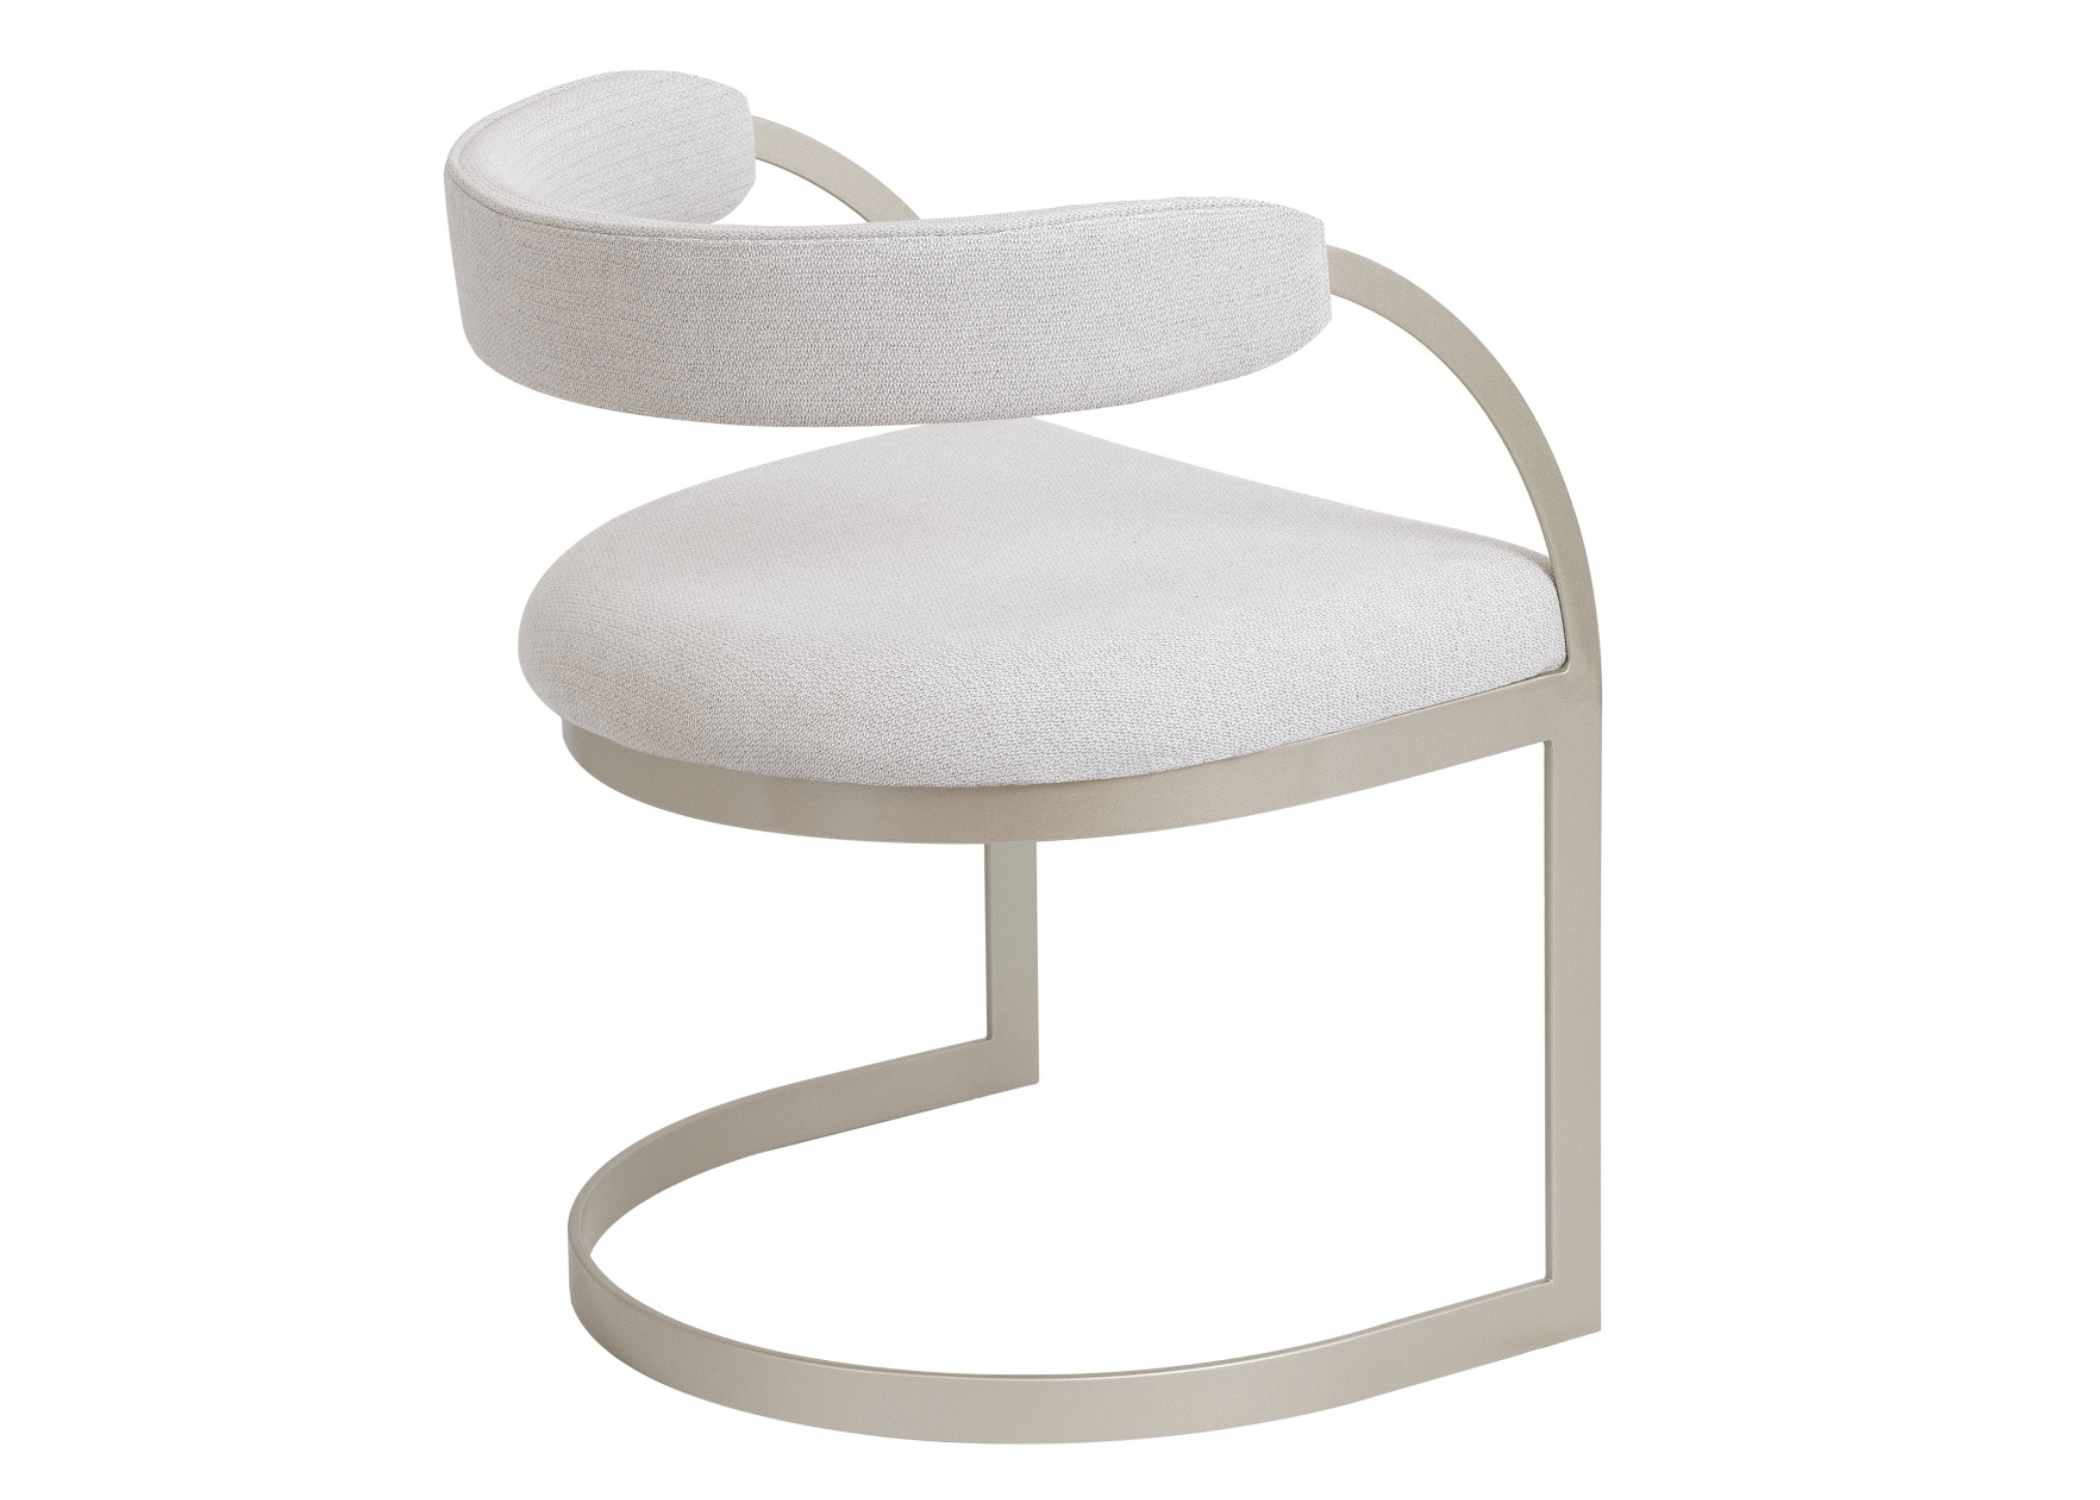 Base em aço carbono pintado: durabilidade e estilo na Cadeira Lidi.